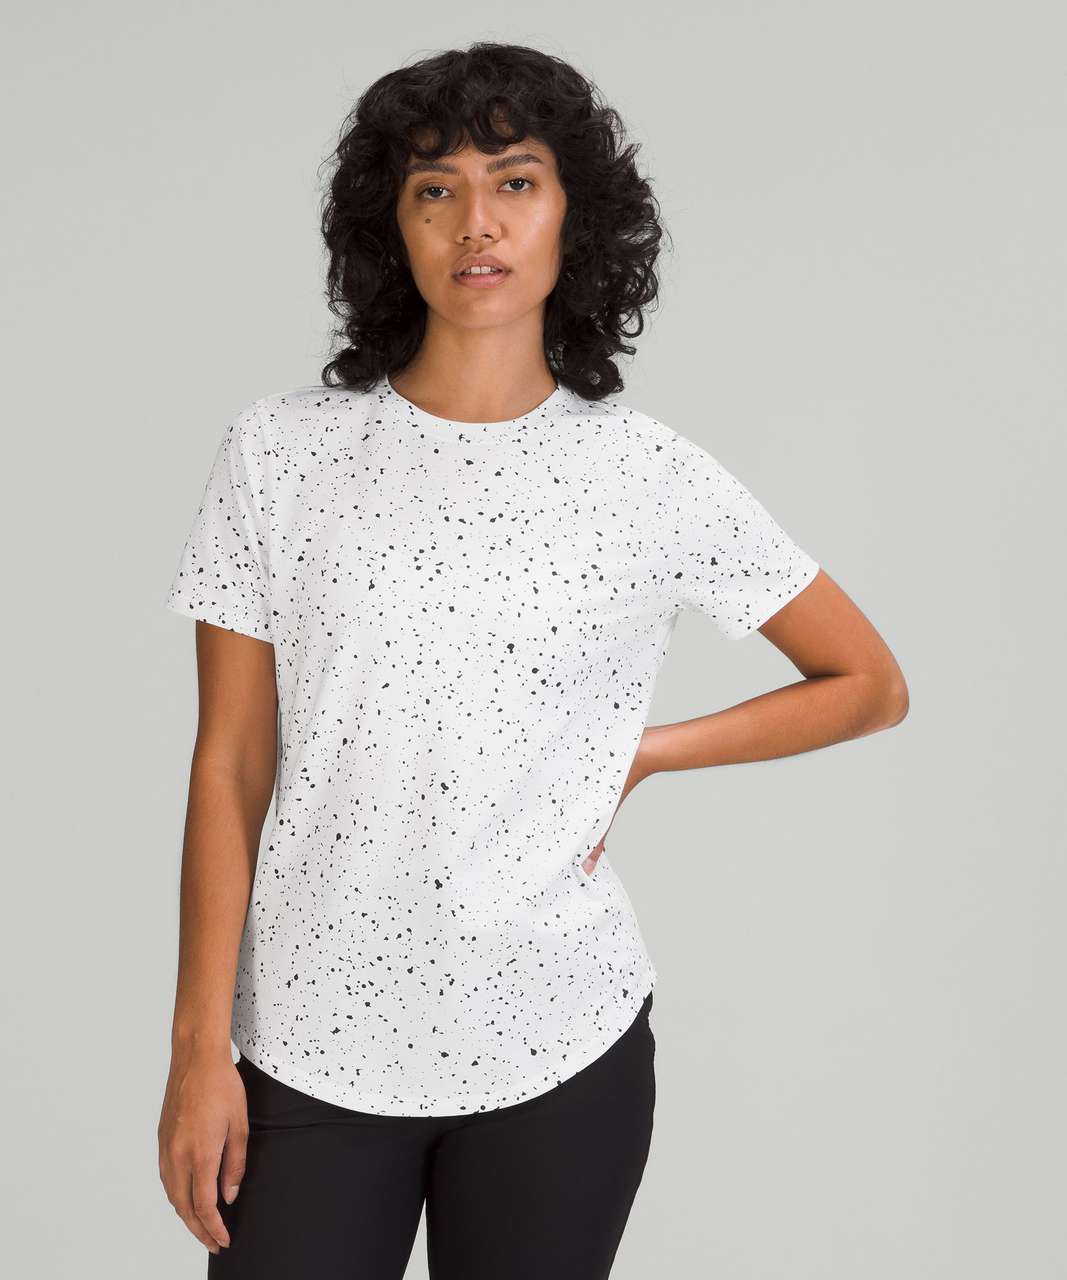 Lululemon Love Crew Short Sleeve T-Shirt - Revitalize Splatter White Graphite Grey